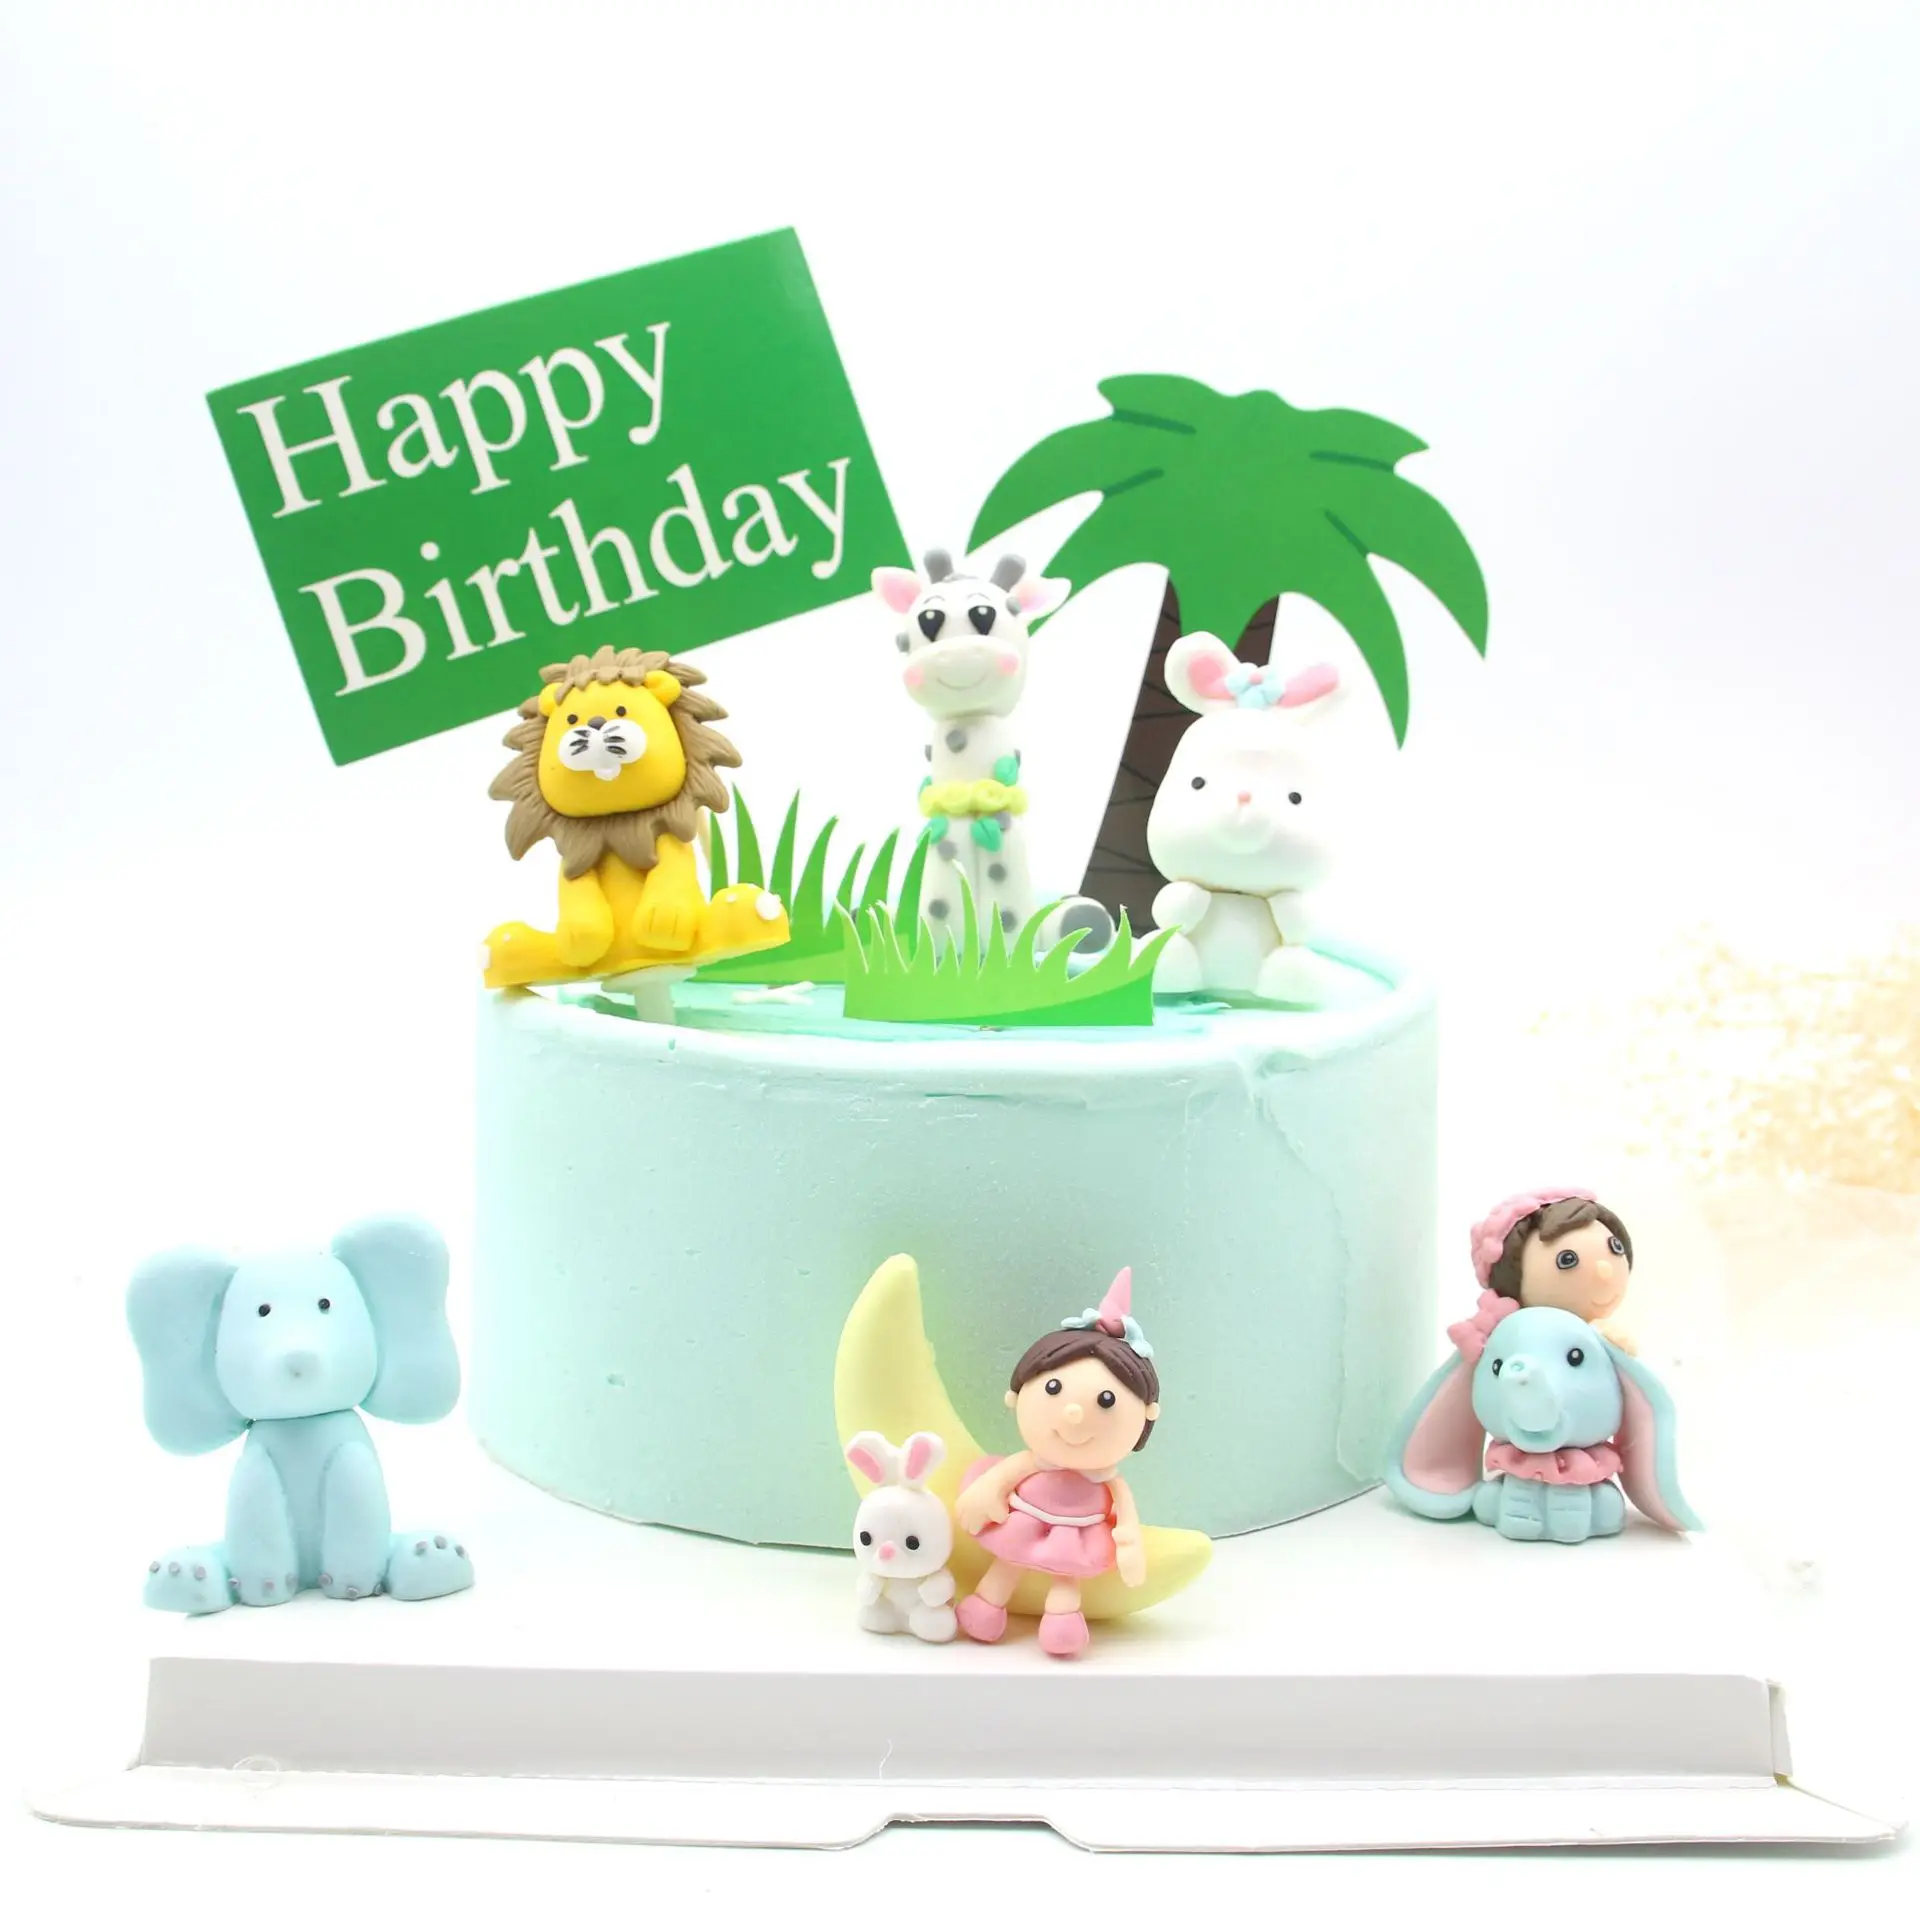 Красивые украшения торта с изображением леса животных, лисы, белки, цветов, венок, гирлянда, топпер для торта, товары для детского дня рождения